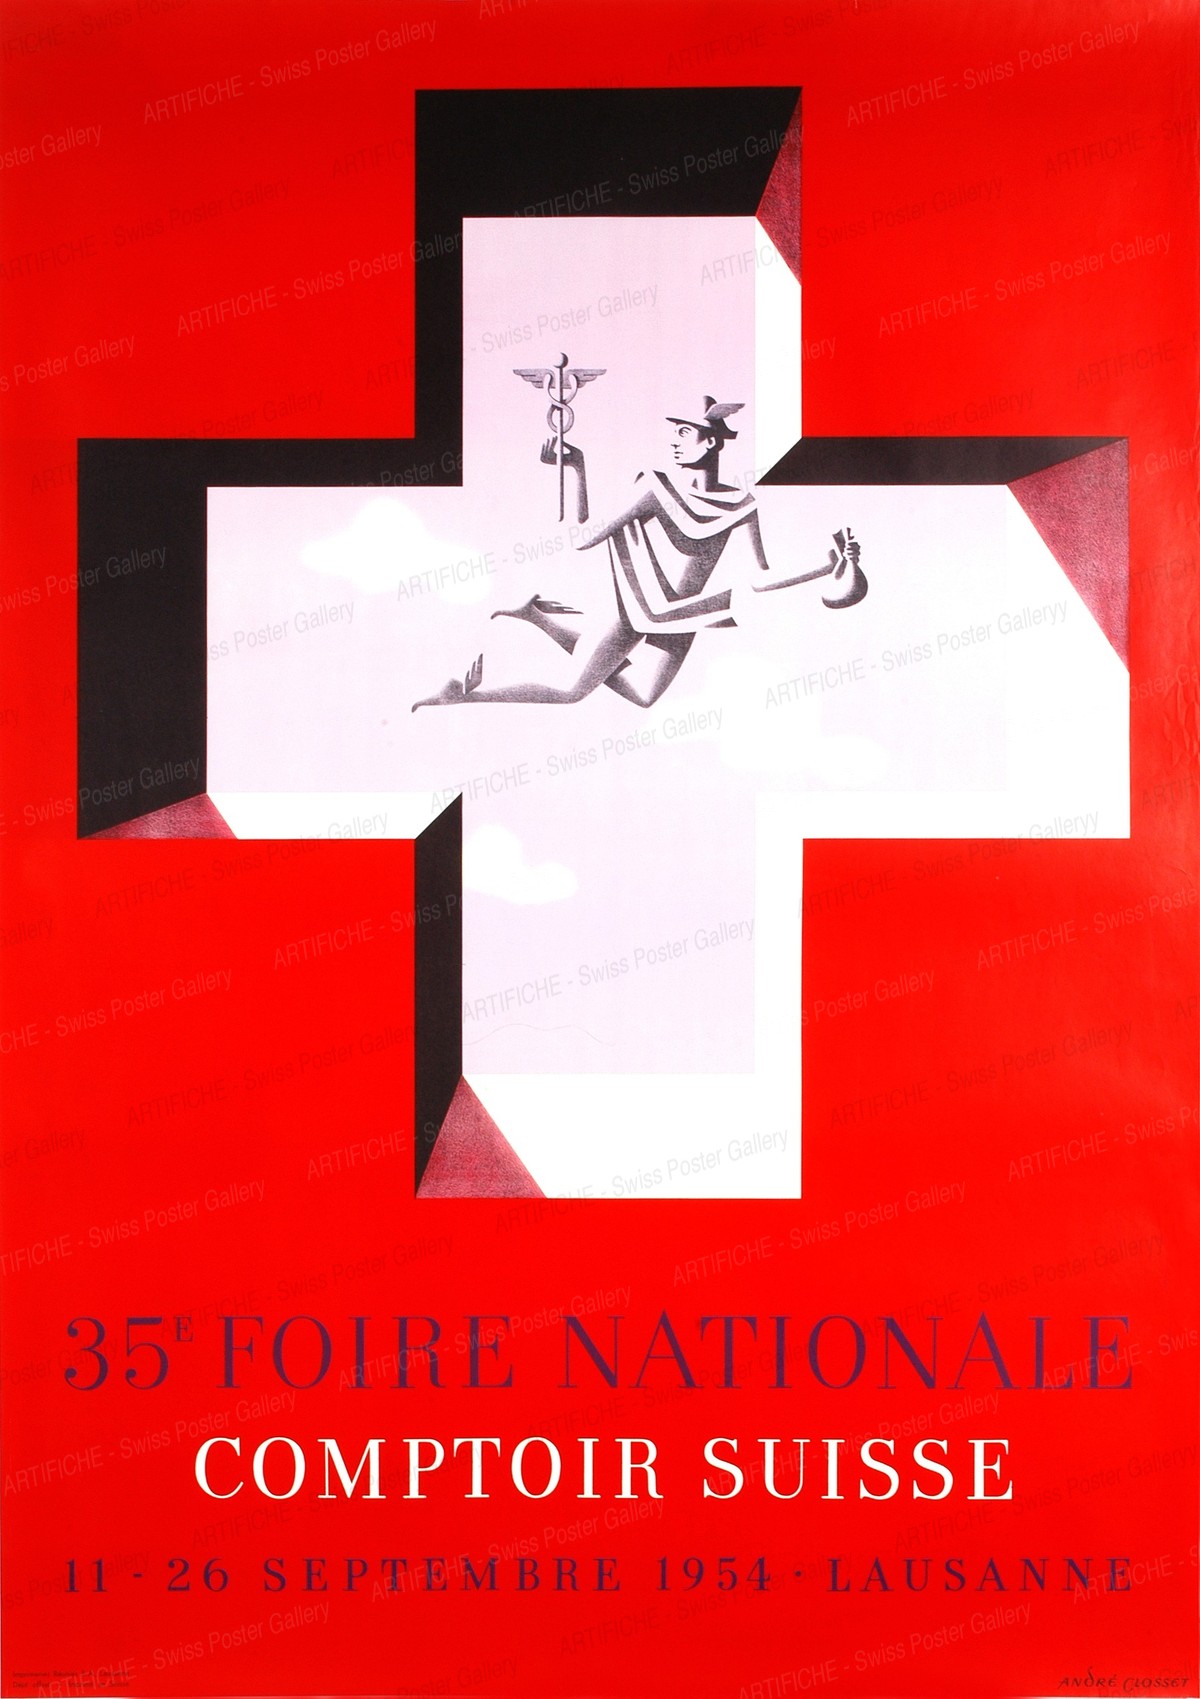 35e Foire National Comptoir Suisse 11 – 26 Septembre 1954 Lausanne, André Closset